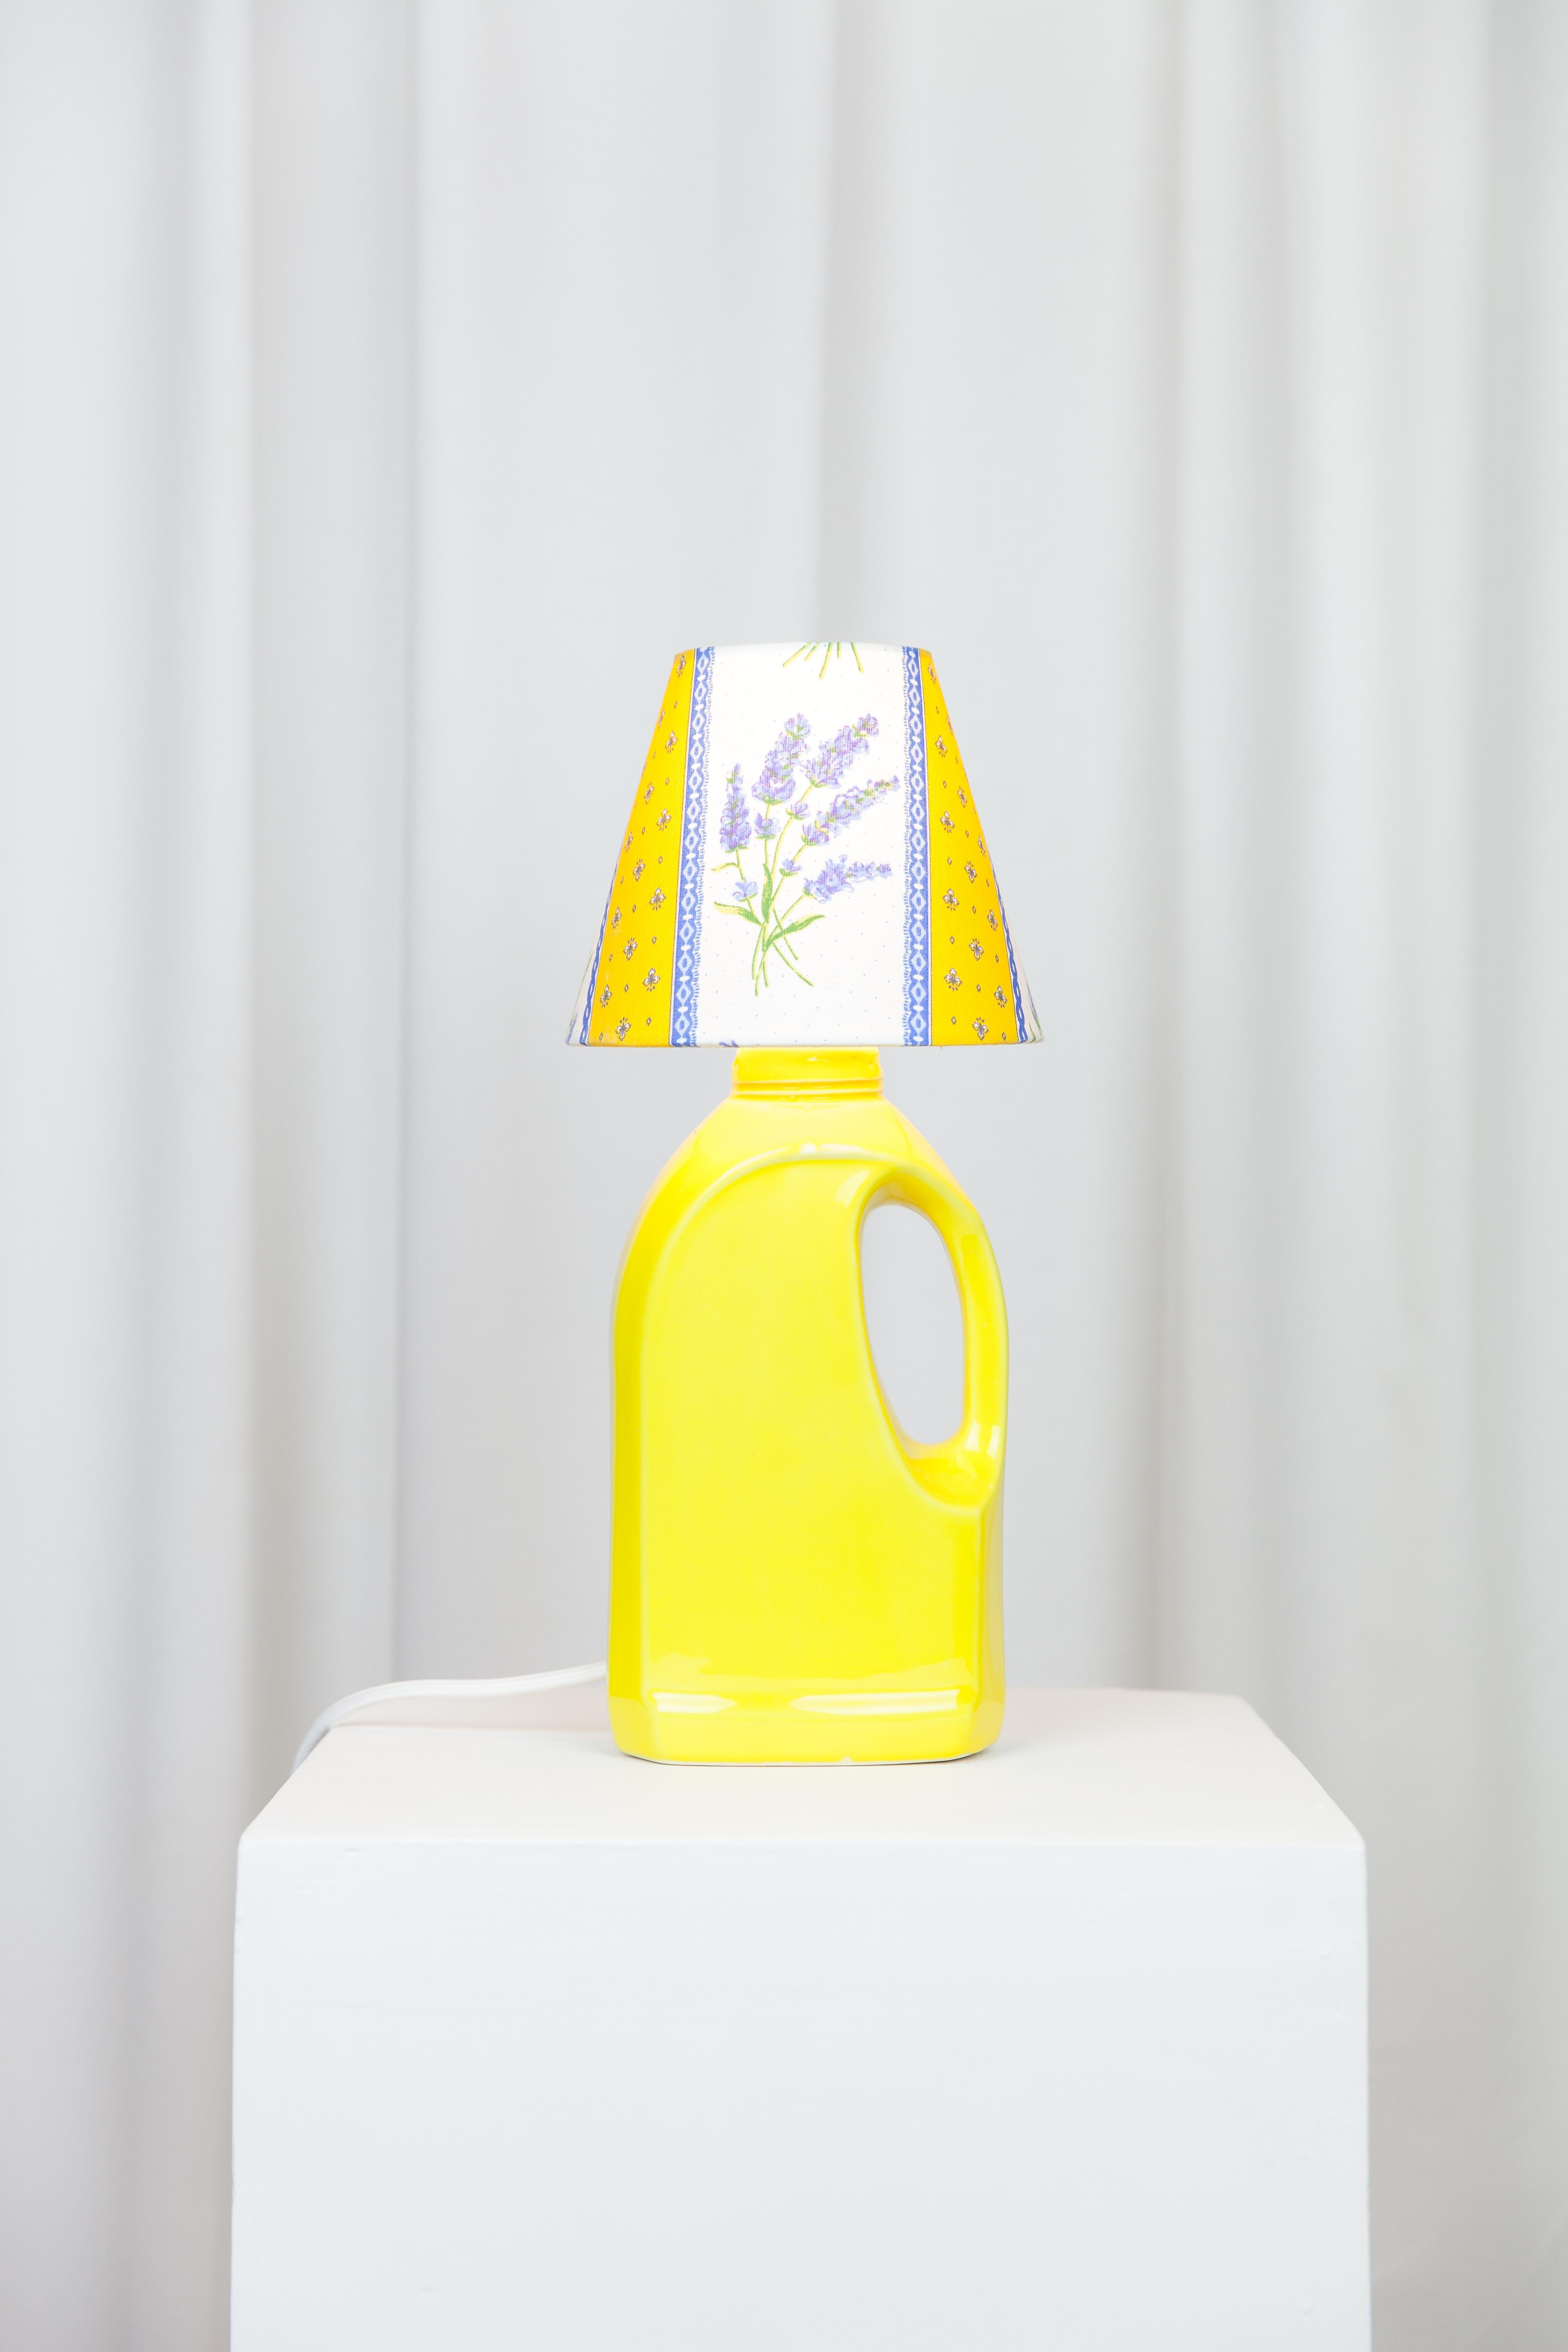 Post-Modern Laundry Yellow Lamp by Lola Mayeras